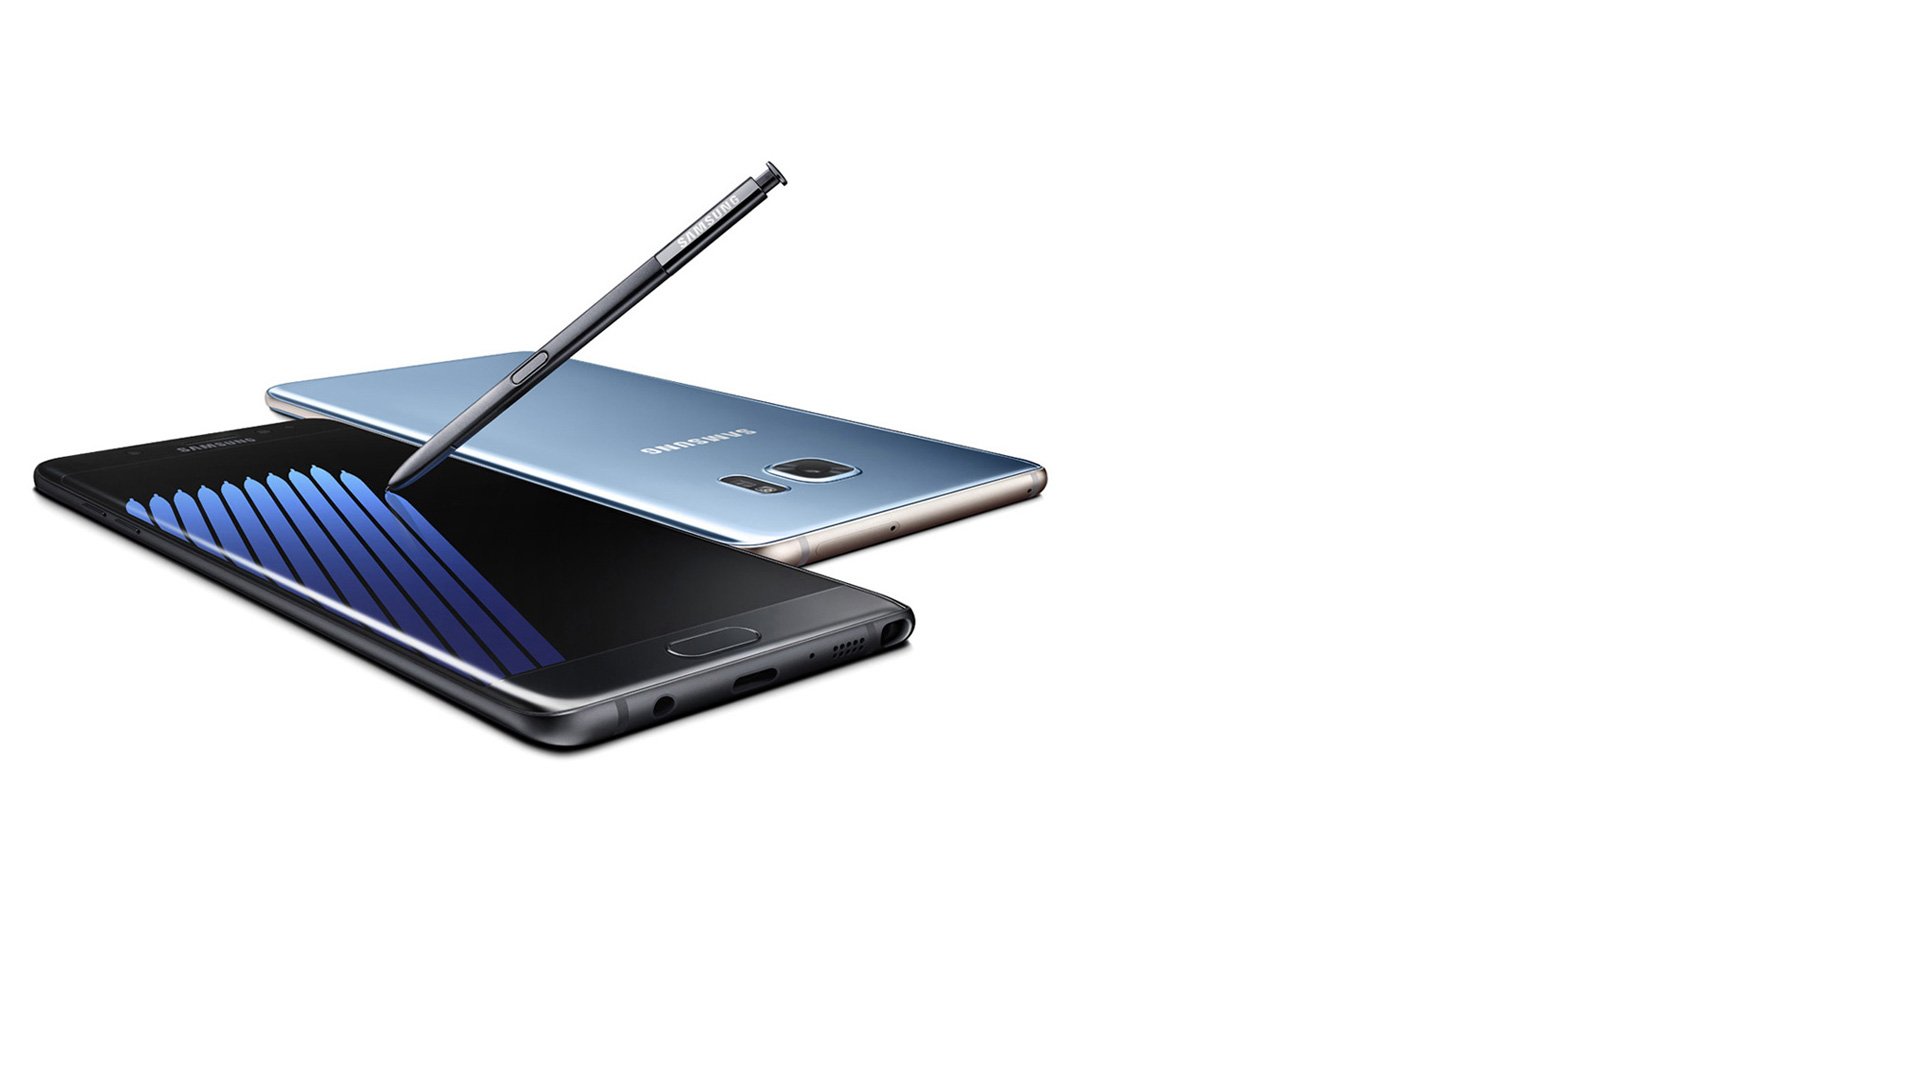 Samsung Galaxy Note 7: Display nimmt leichter Schaden als iPhones 6